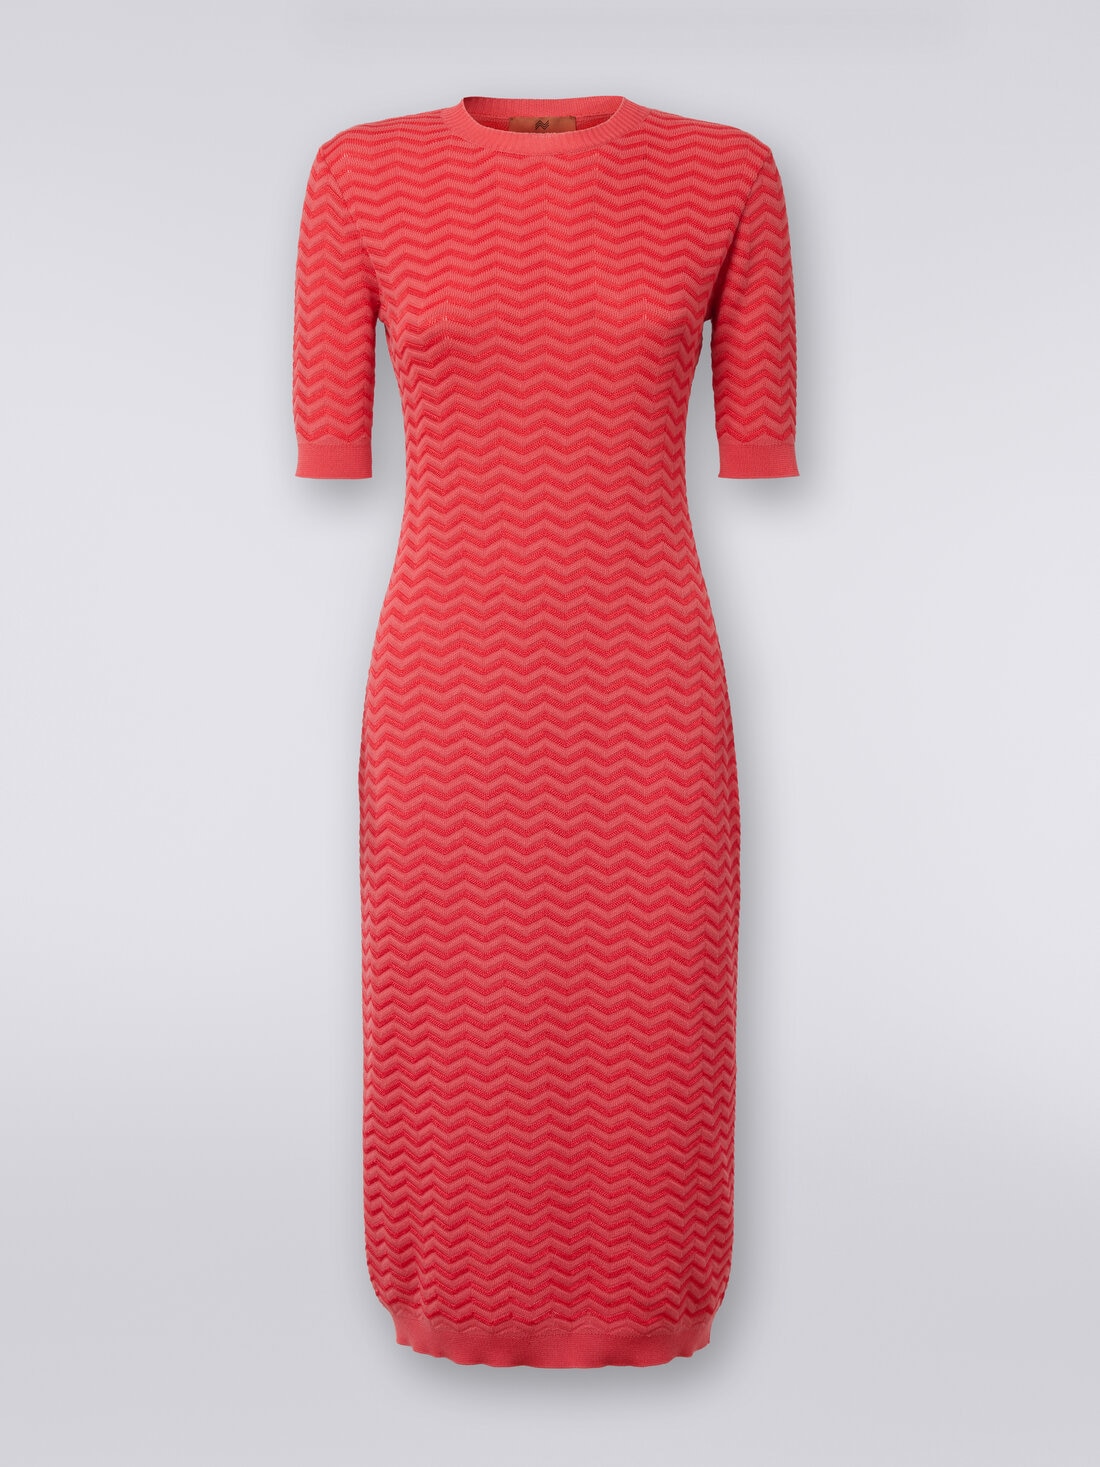 Longuette-Kleid aus Strick mit Chevronmuster und rundem Halsausschnitt, Rot  - DS24SG2DBK033W81756 - 0